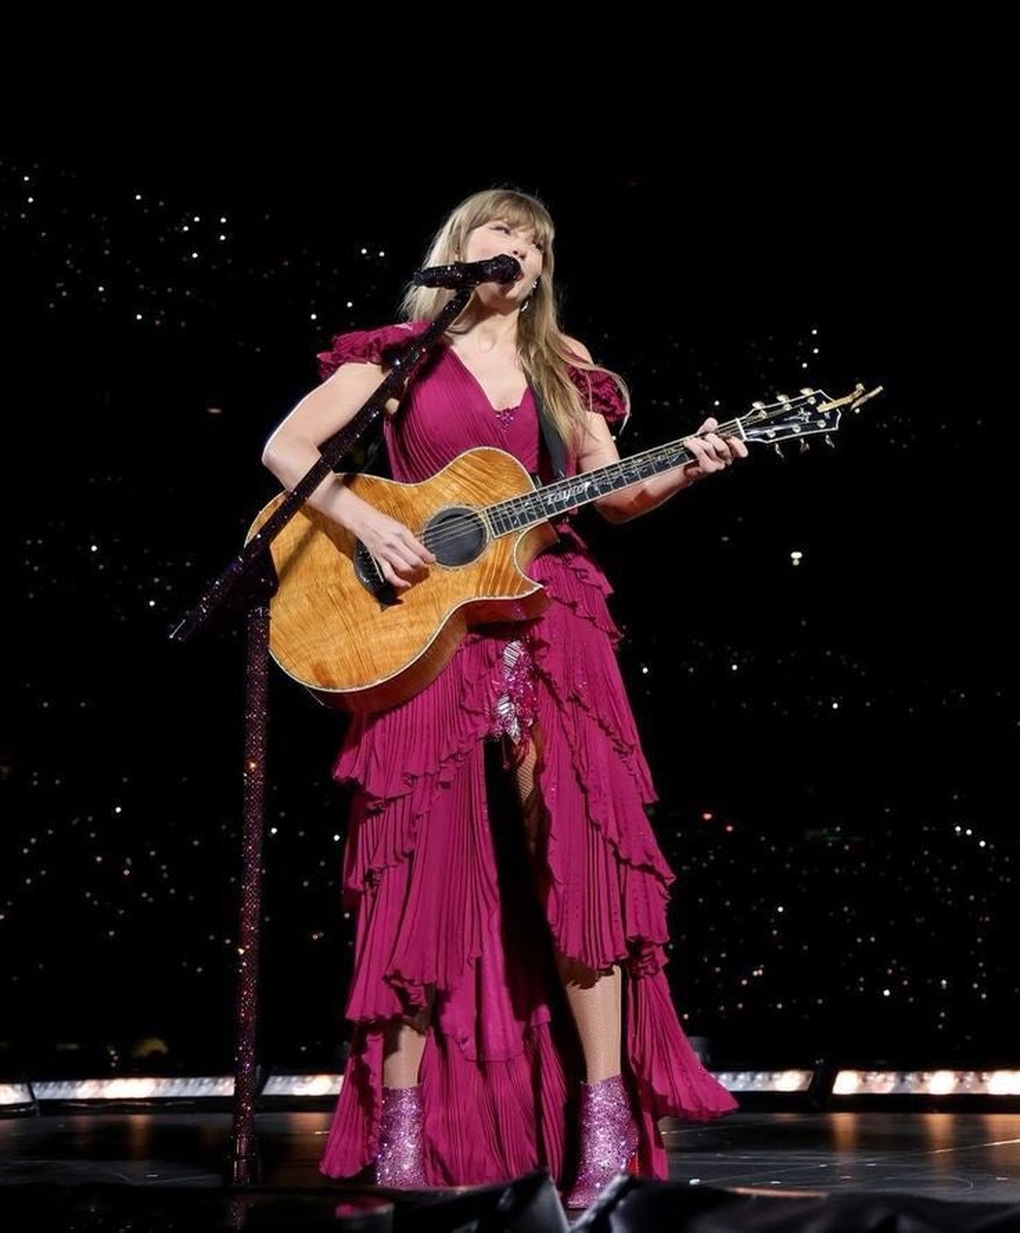 Biểu diễn ở Singapore, Taylor Swift chọn diện đồ của các nhà mốt danh tiếng - 8